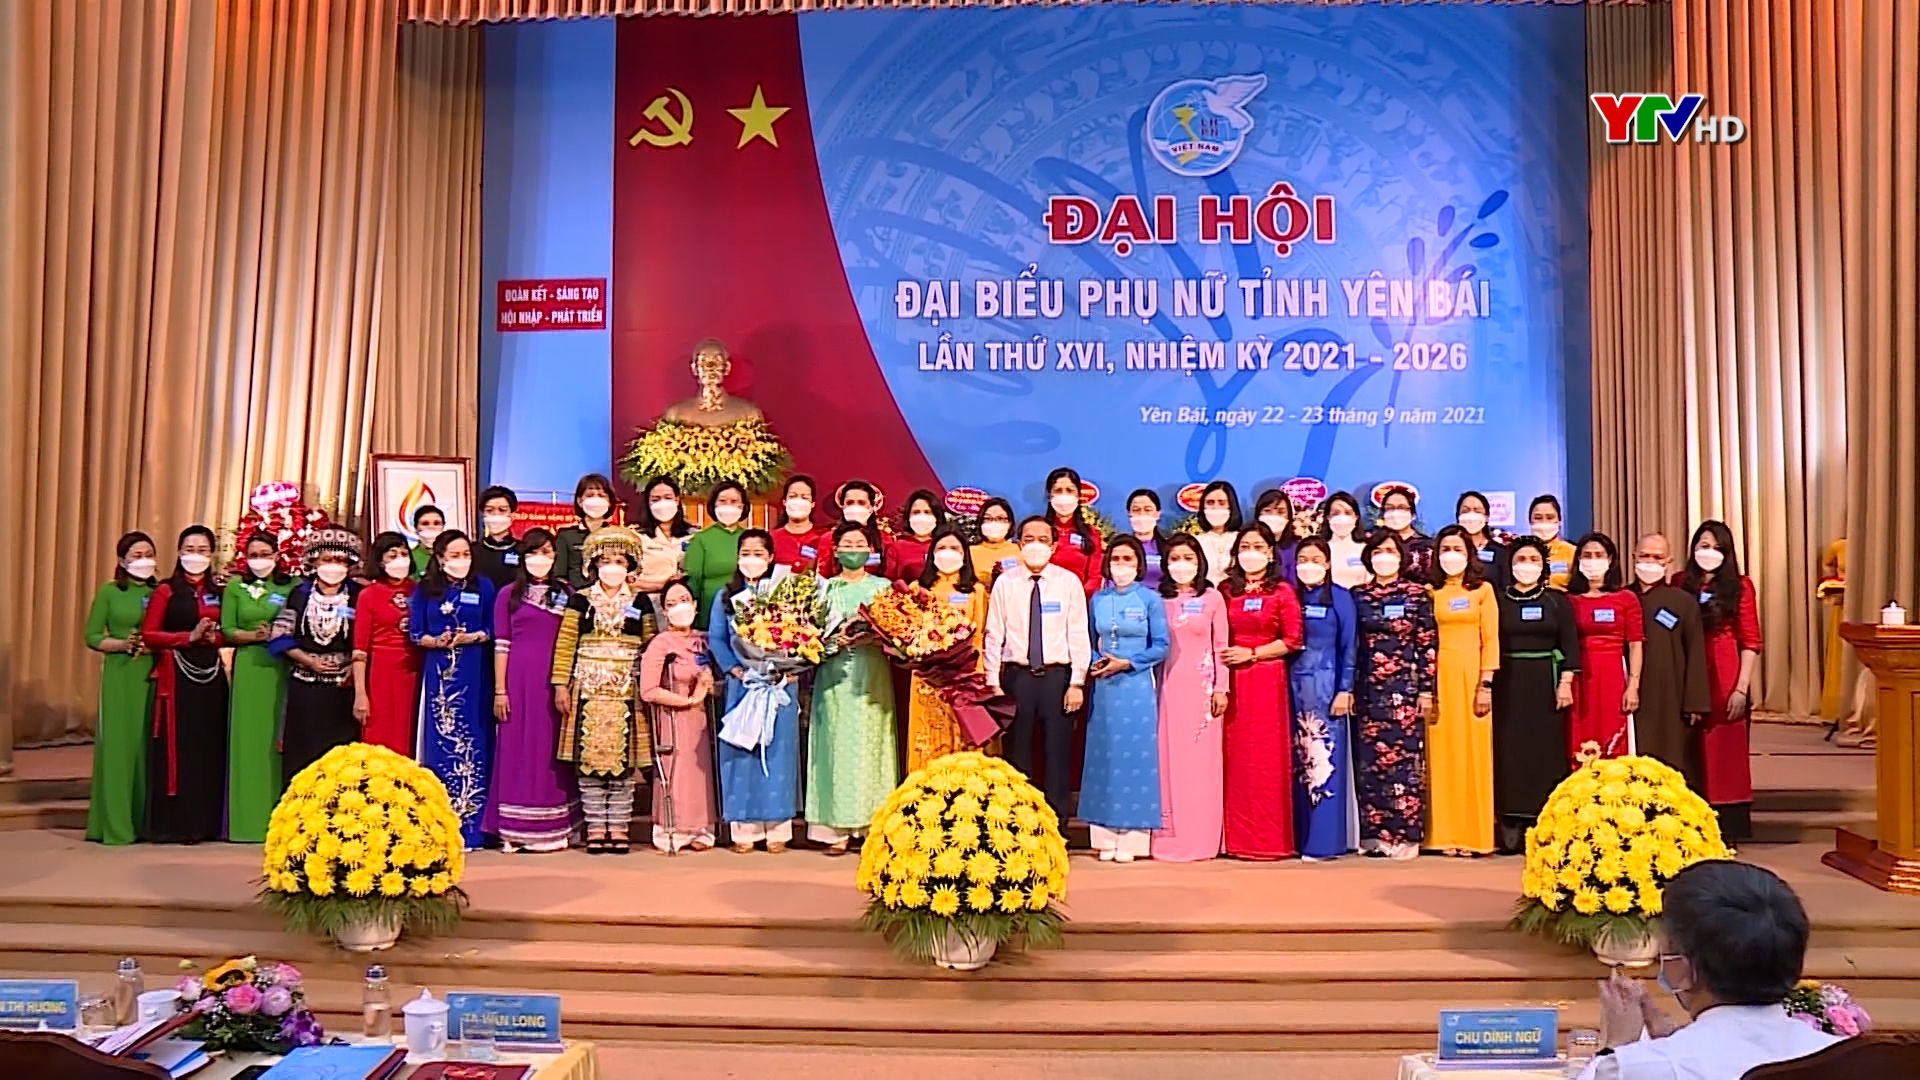 Đồng chí Nguyễn Thị Bích Nhiệm tái đắc cử Chủ tịch Hội Liên hiệp Phụ nữ tỉnh Yên Bái nhiệm kỳ 2021 - 2026